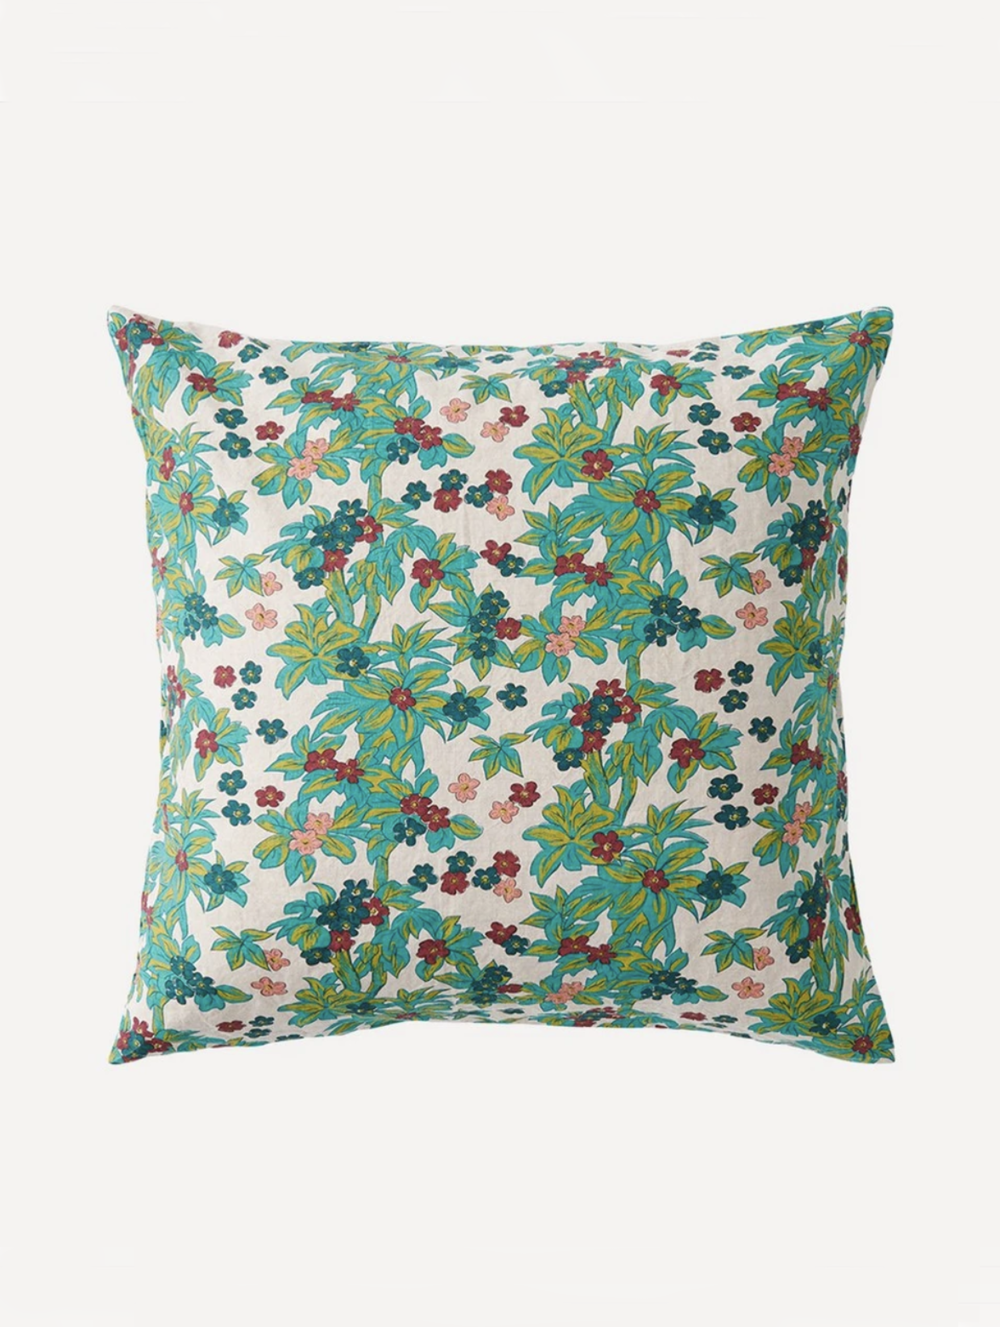 Midge Floral Pillowcase - £75 - Society of Wanders at Folk Interiors